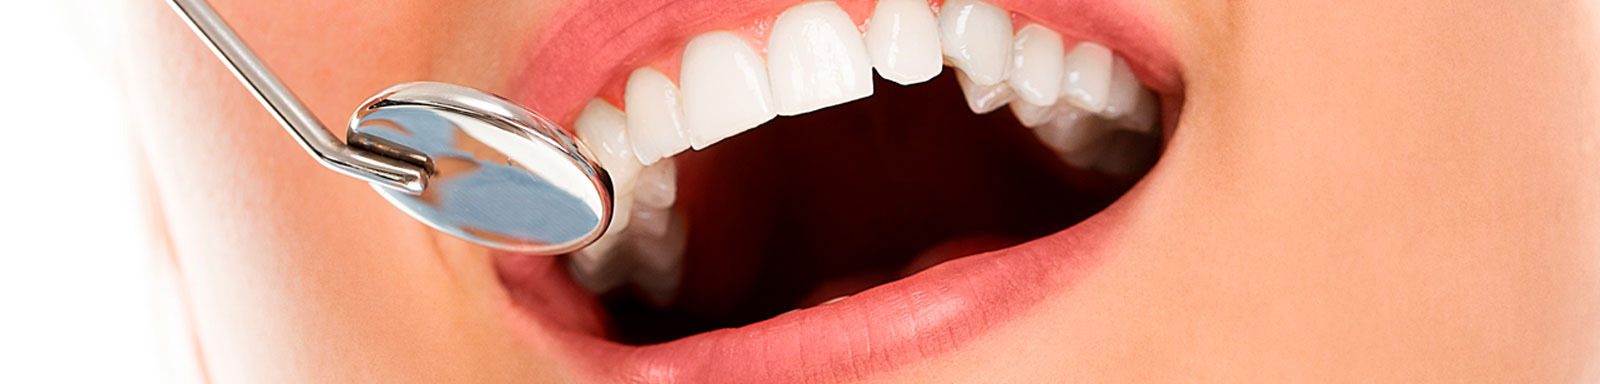 Tratamento - Odontologia Estética